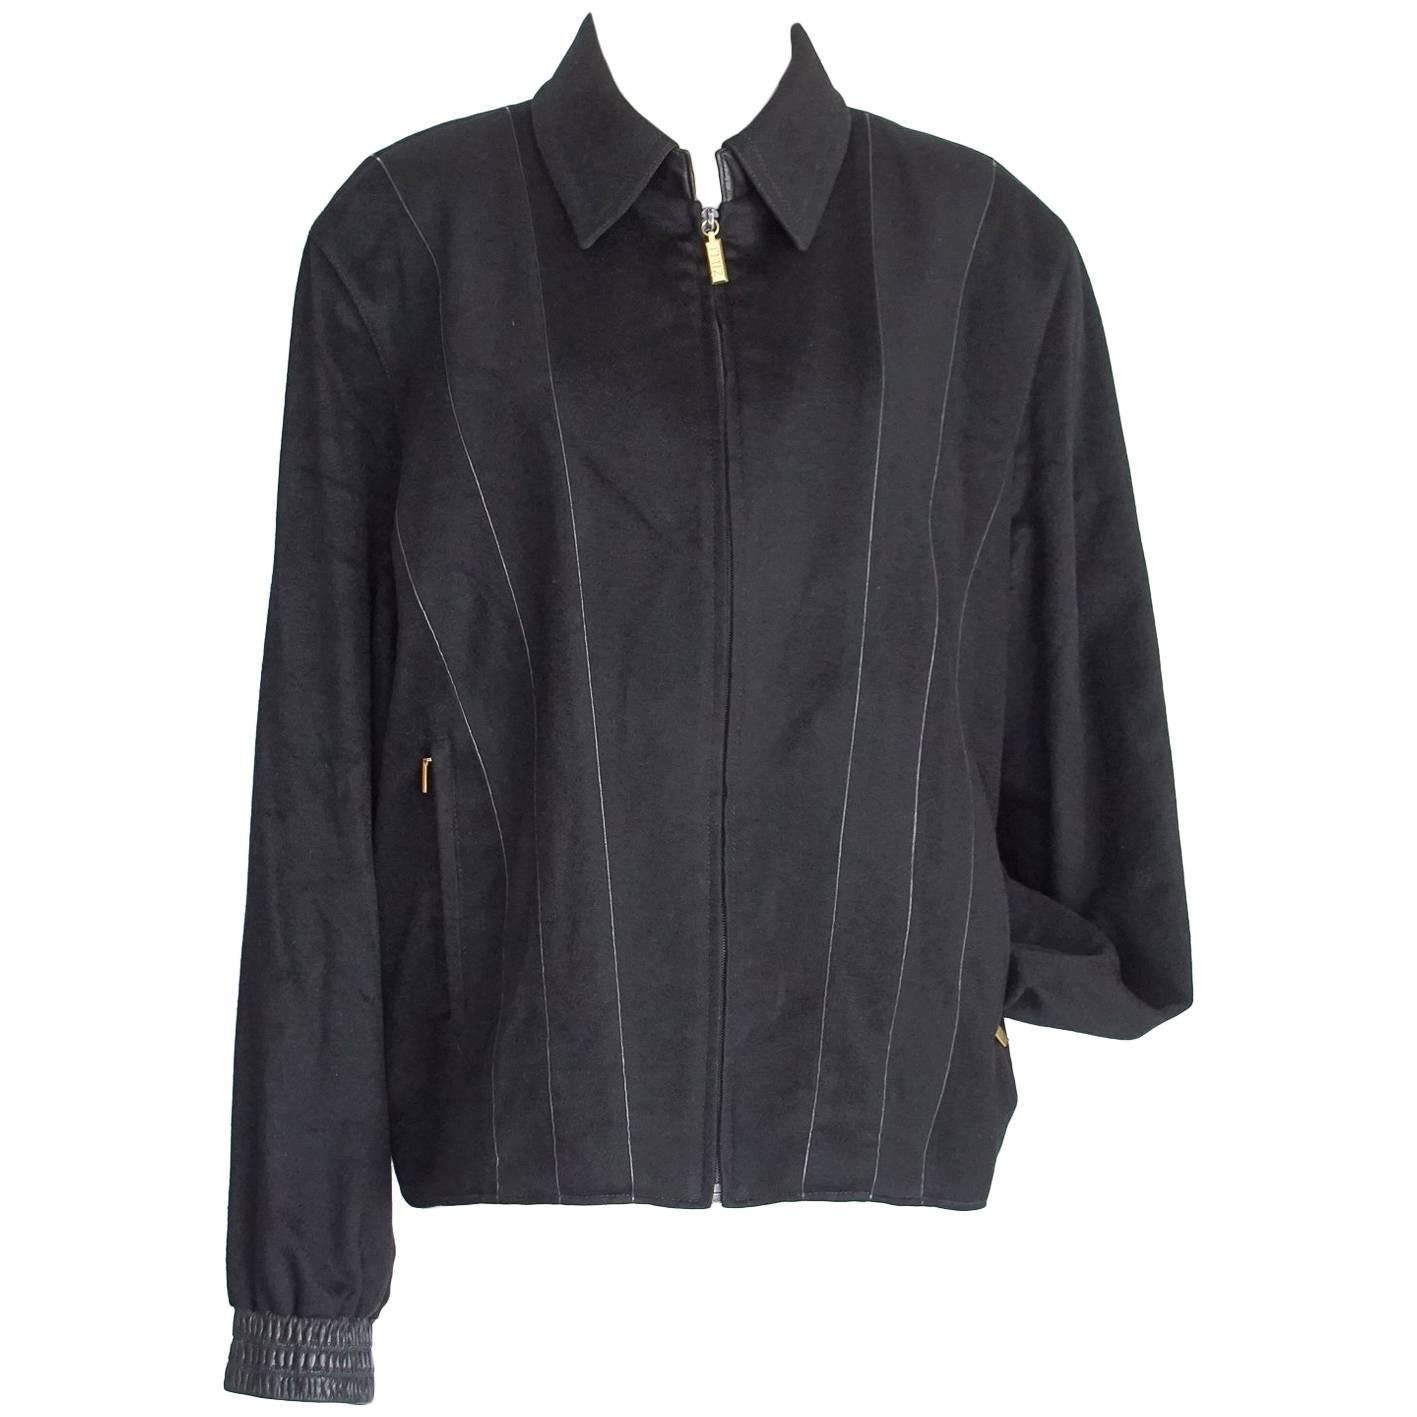 Zilli Men's Cashmere Black Jacket Leather Details Bomber 56